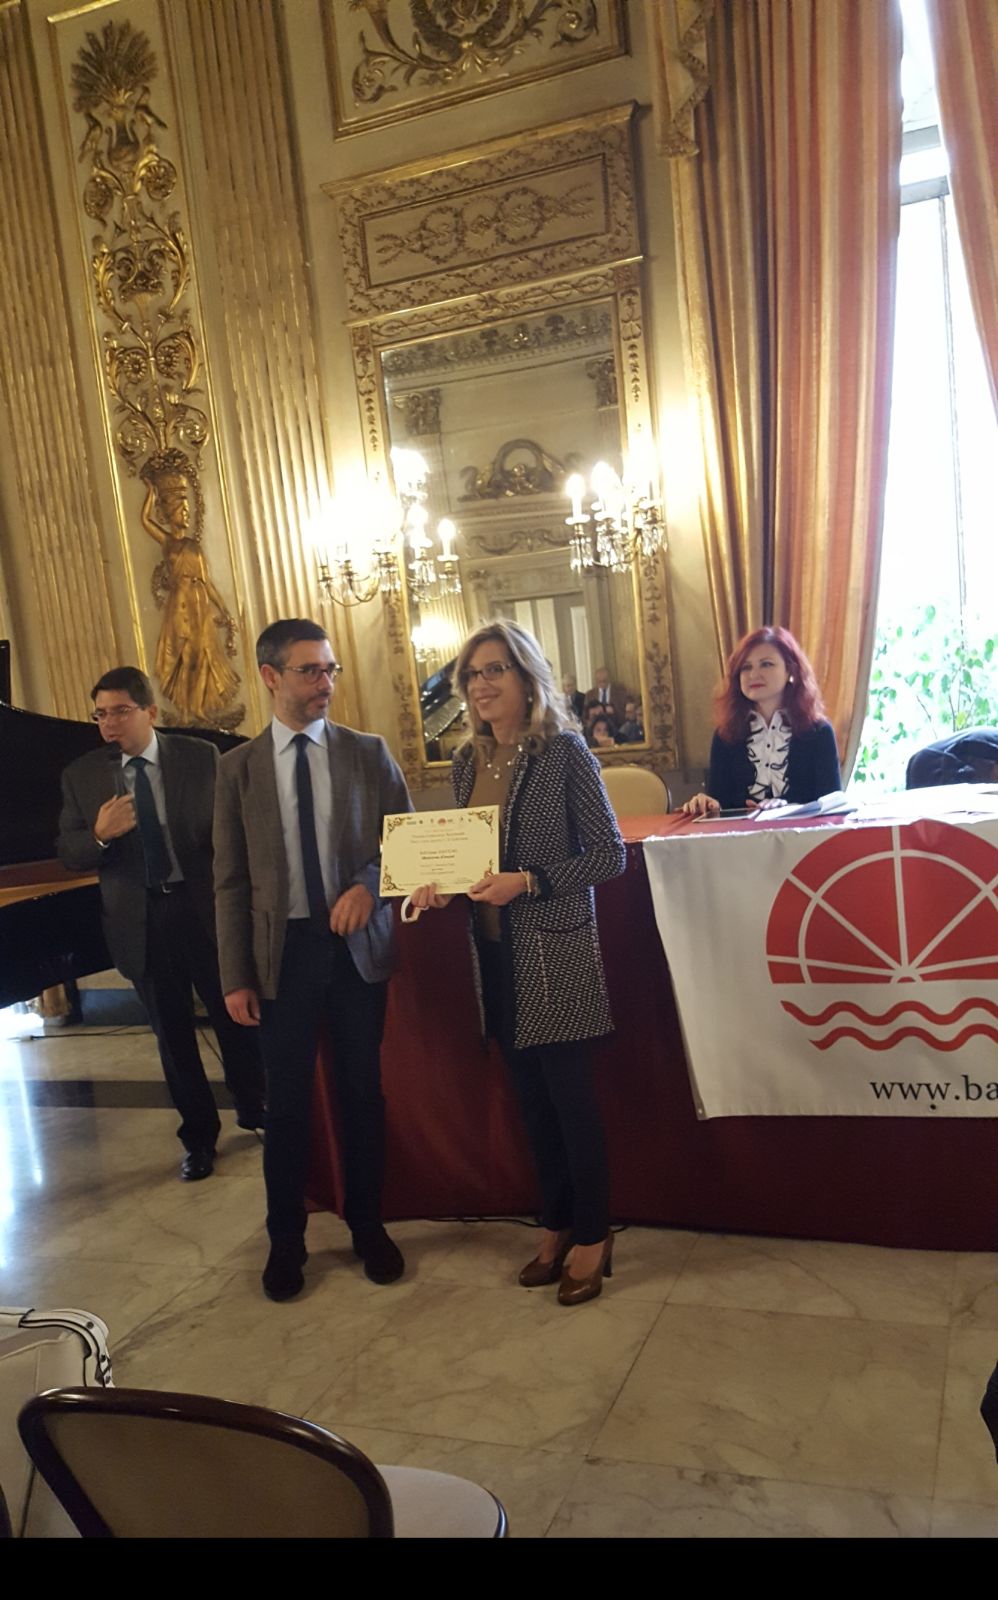 Premio Letterario“Bari Città Aperta”, Sala delle Muse, Circolo Unione, Bari